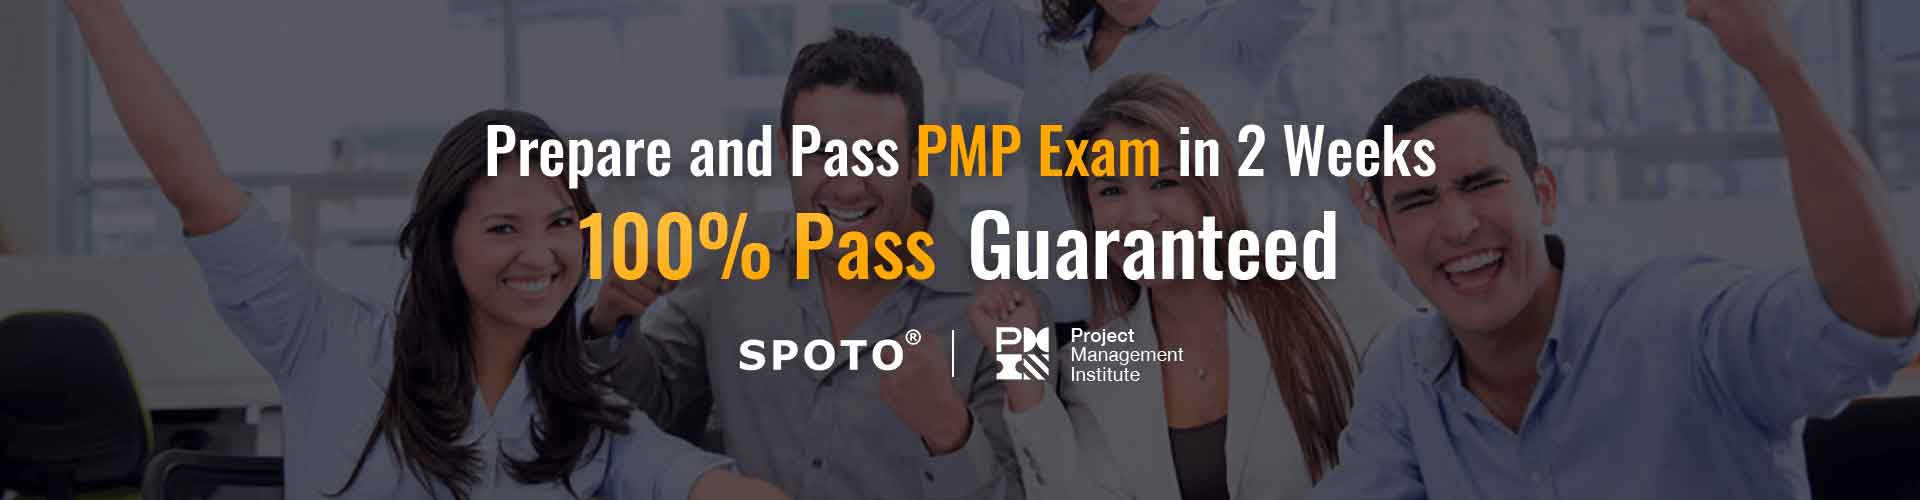 PMP exam